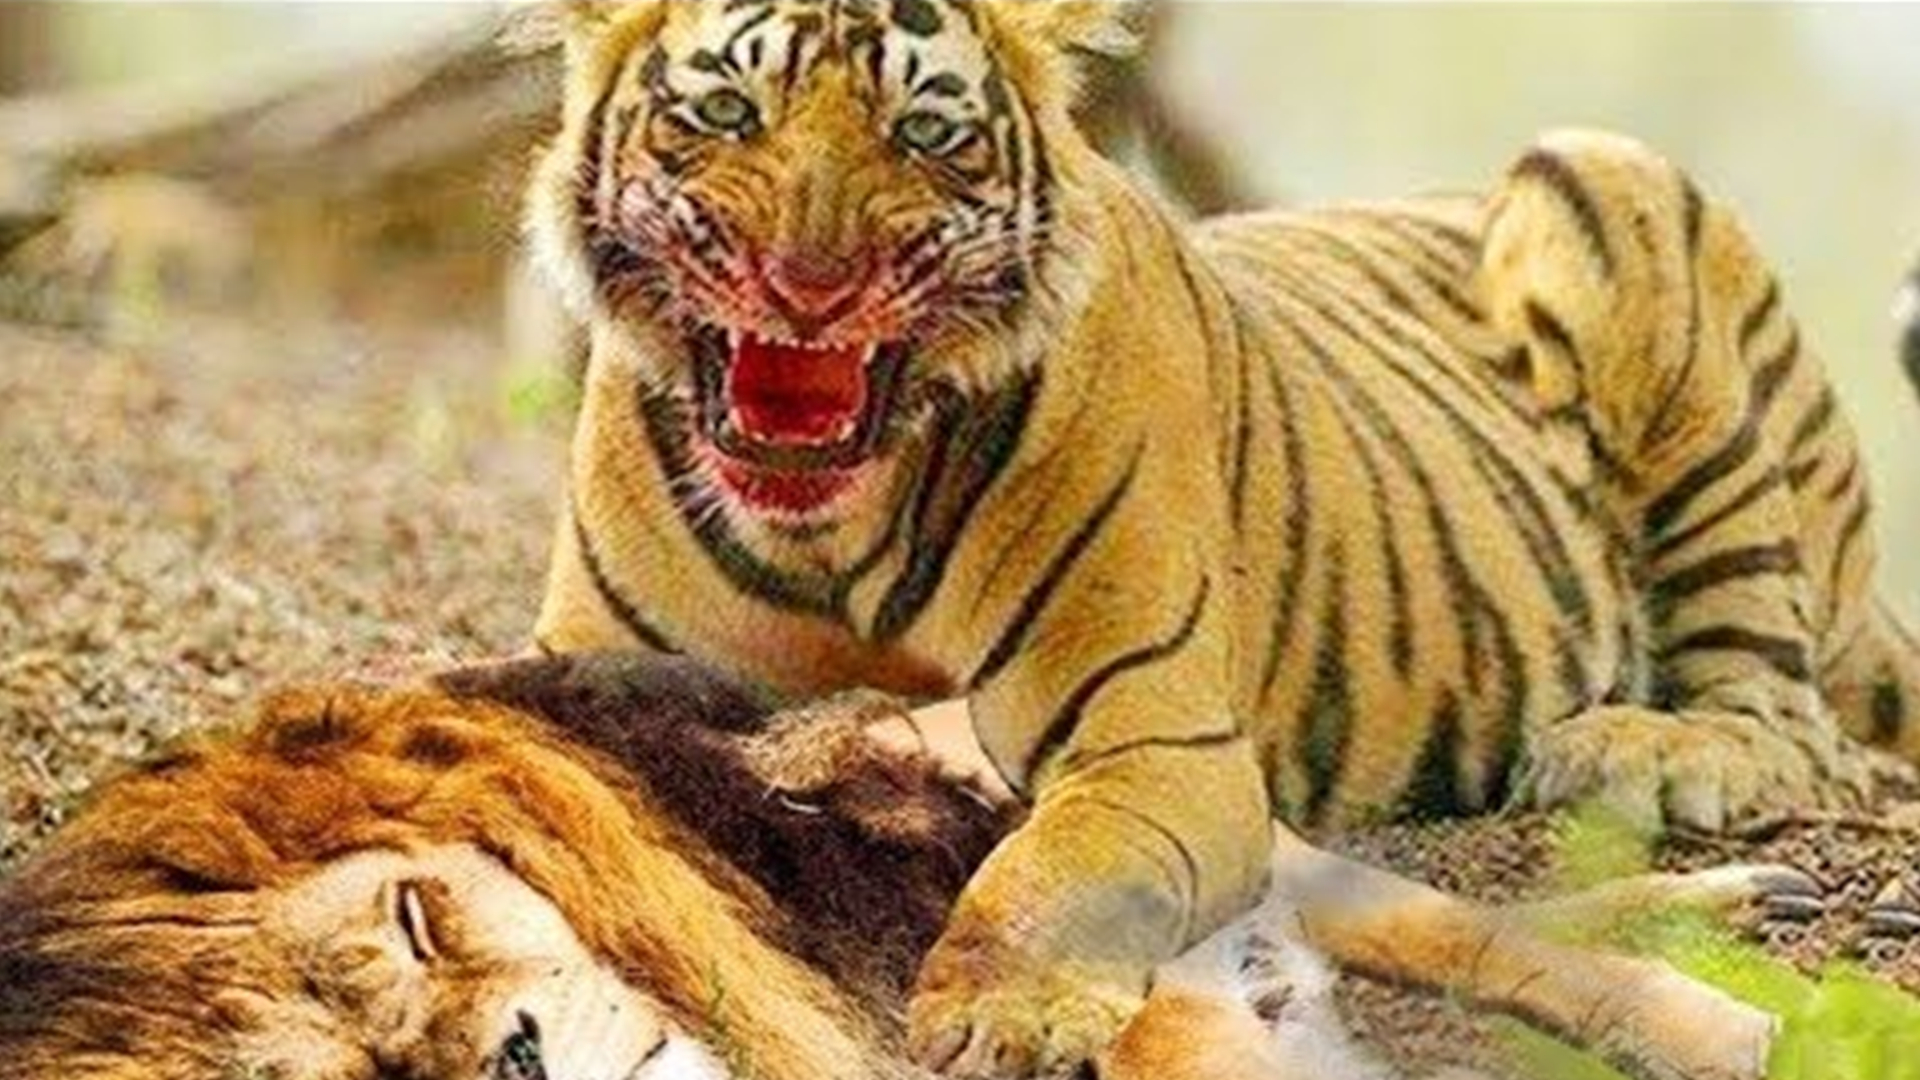 十大最强的老虎排名图片